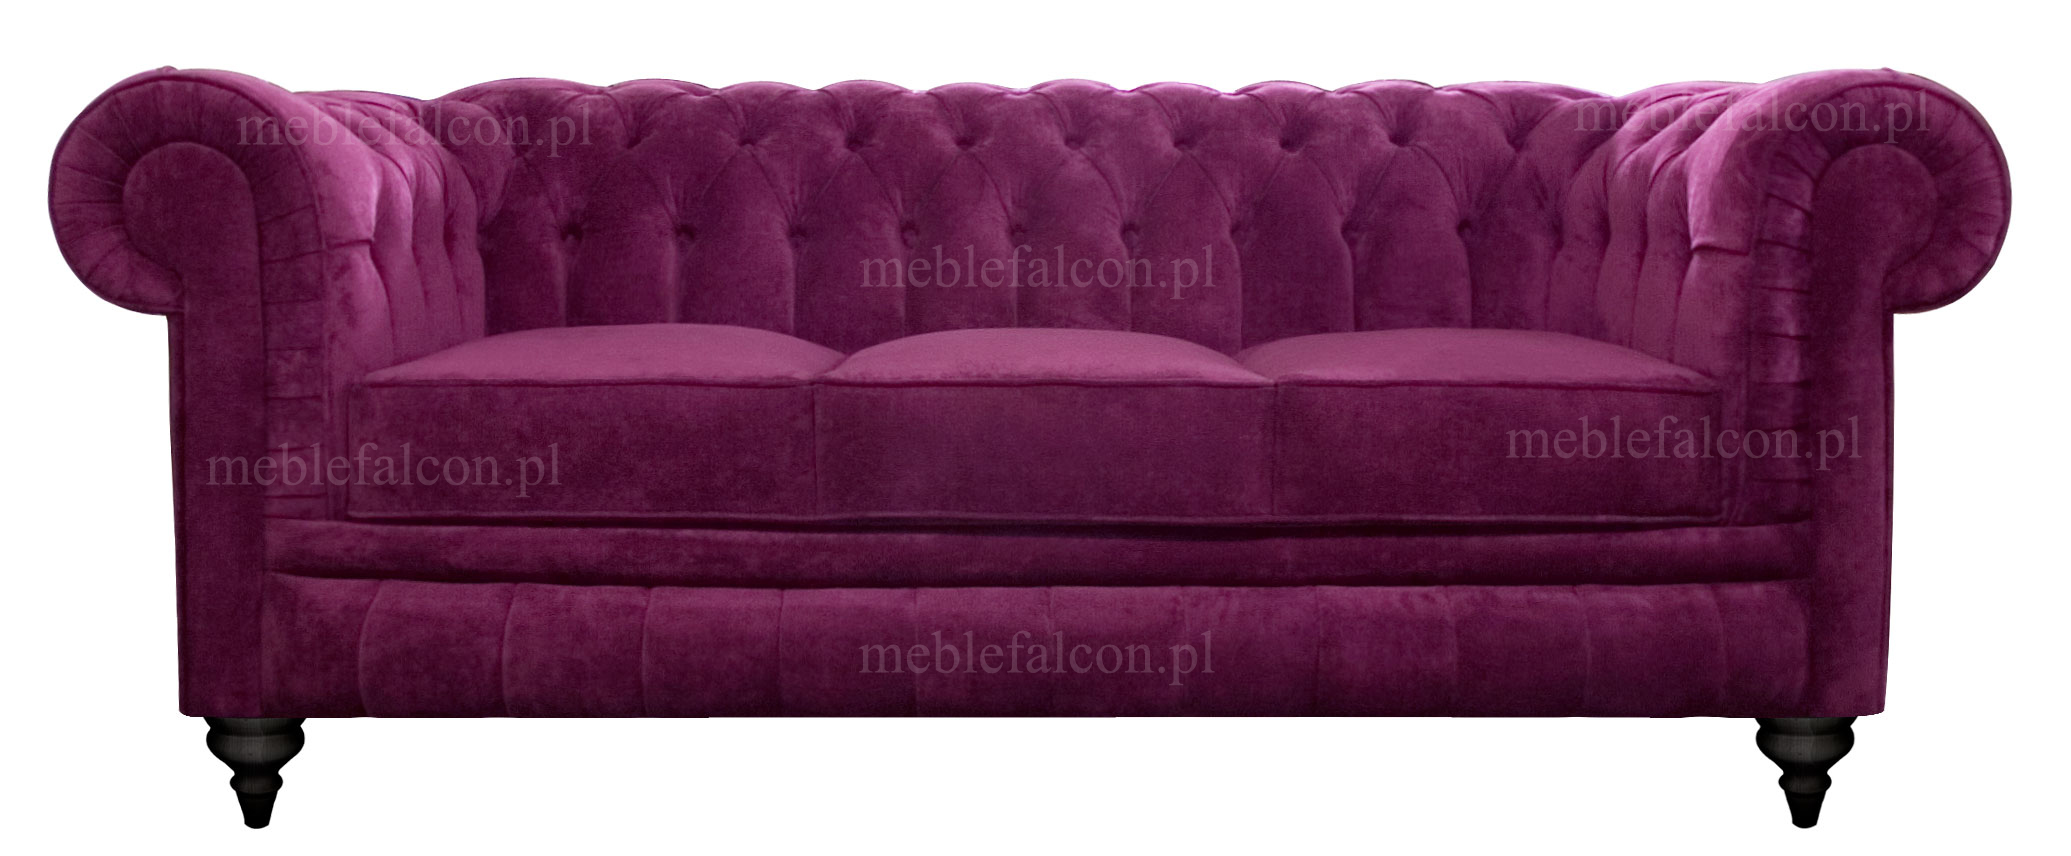 sofa 3 osobowa perfekcyjnie wykonana sofa o idealnych proporcjach tapicerowana miękkim pluszem